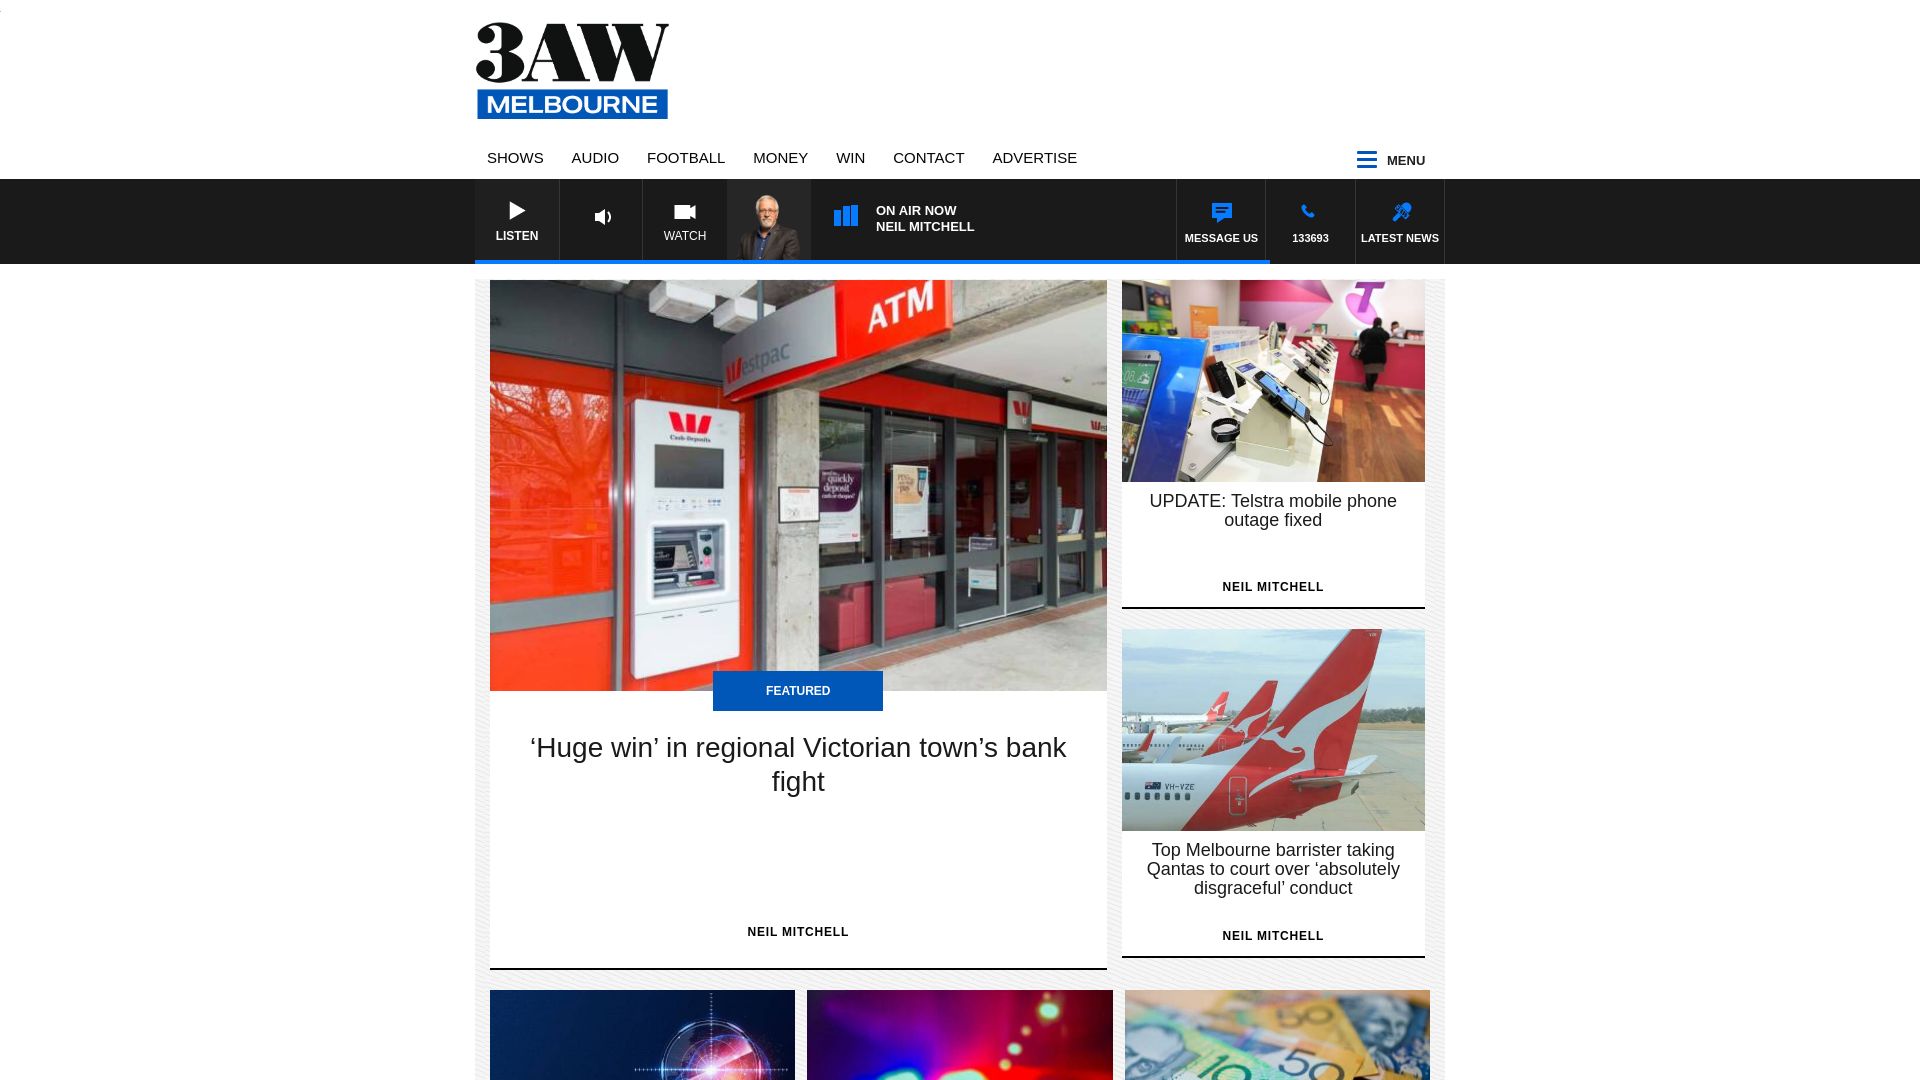 网站状态 3aw.com.au 是  在线的